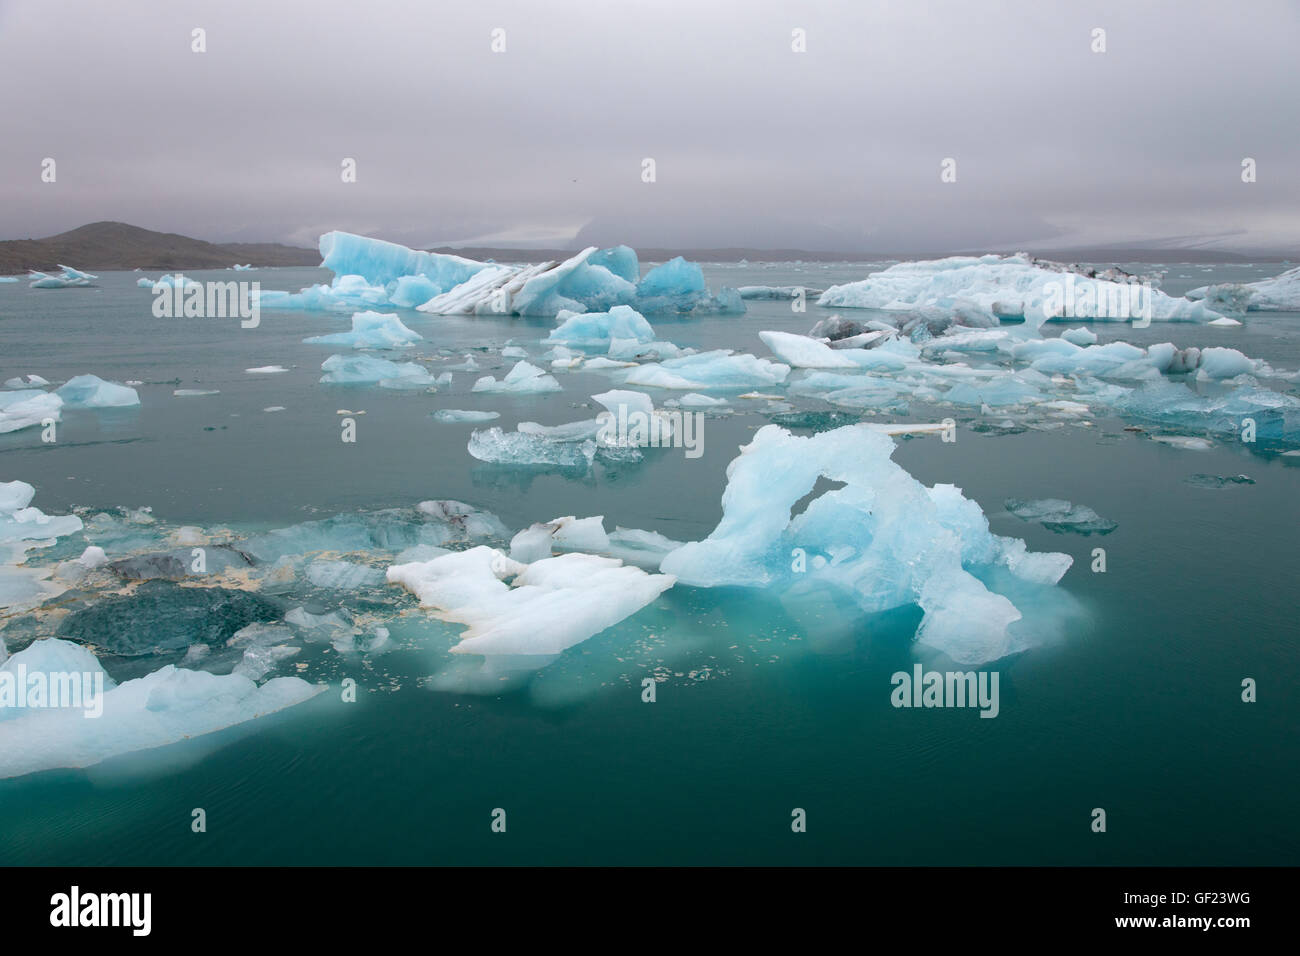 Les icebergs bleu lagon Jokulsarlon Islande LA008874 Banque D'Images